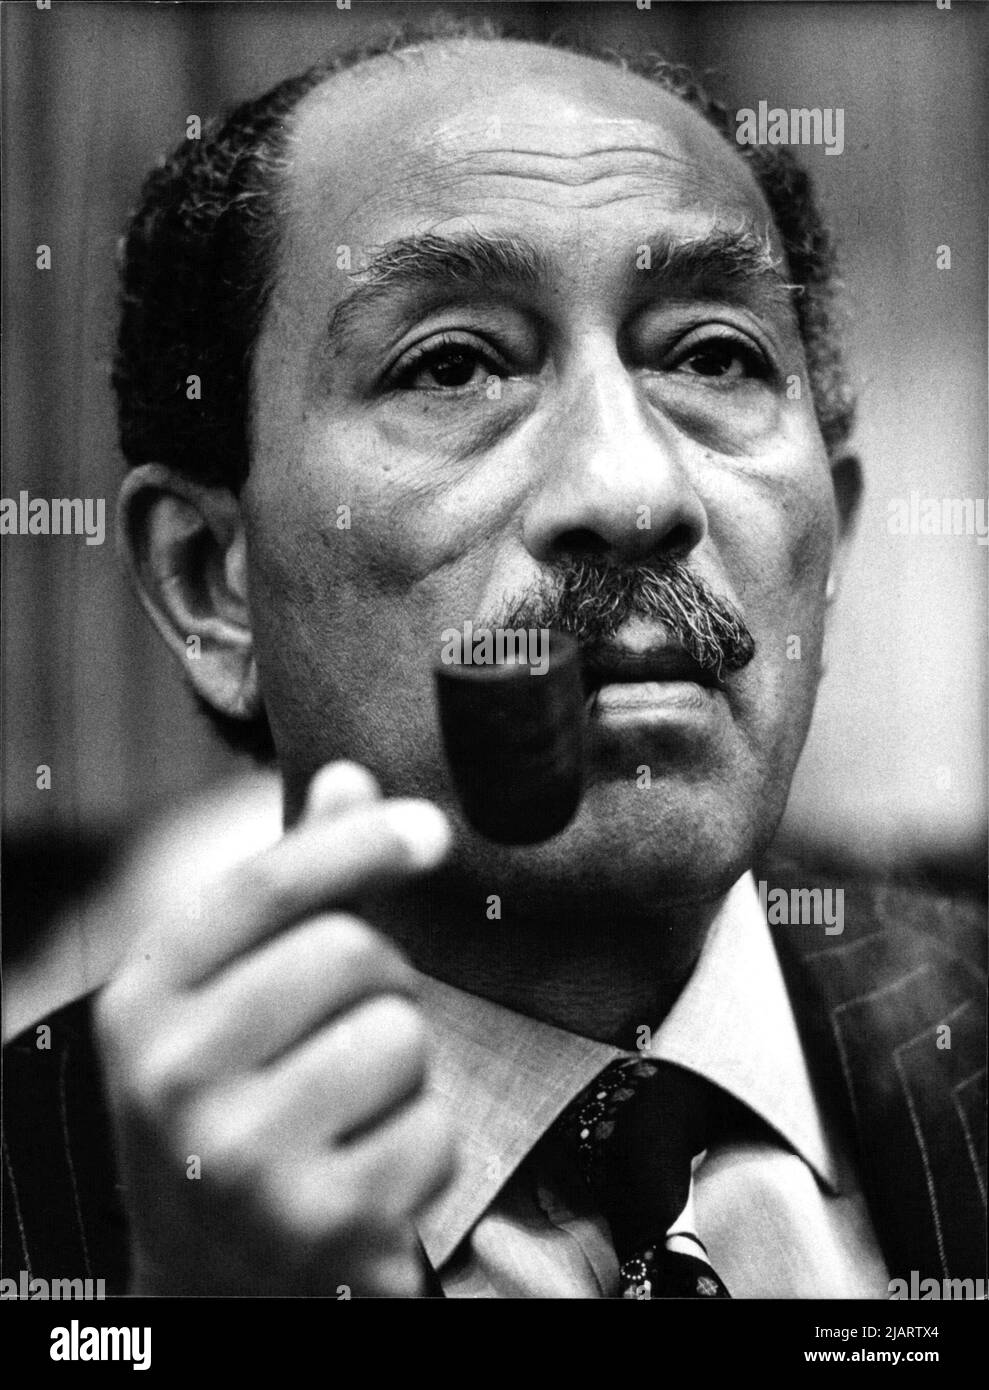 Mohammed Anwar el-Sadat, ägyptischer Staatspräsiden, im Amt von 1970 bis zu seiner Ermordung am 6.10.81. Er führte Ägypten in den Jom-Kippur-Krieg 1973, löste das Land aus der engen Bindung an die Sowjetunion und schloss 1979 einen Friedensvertrag mit Israel, wofür den Friedensnobelpreis erhielt. Stock Photo